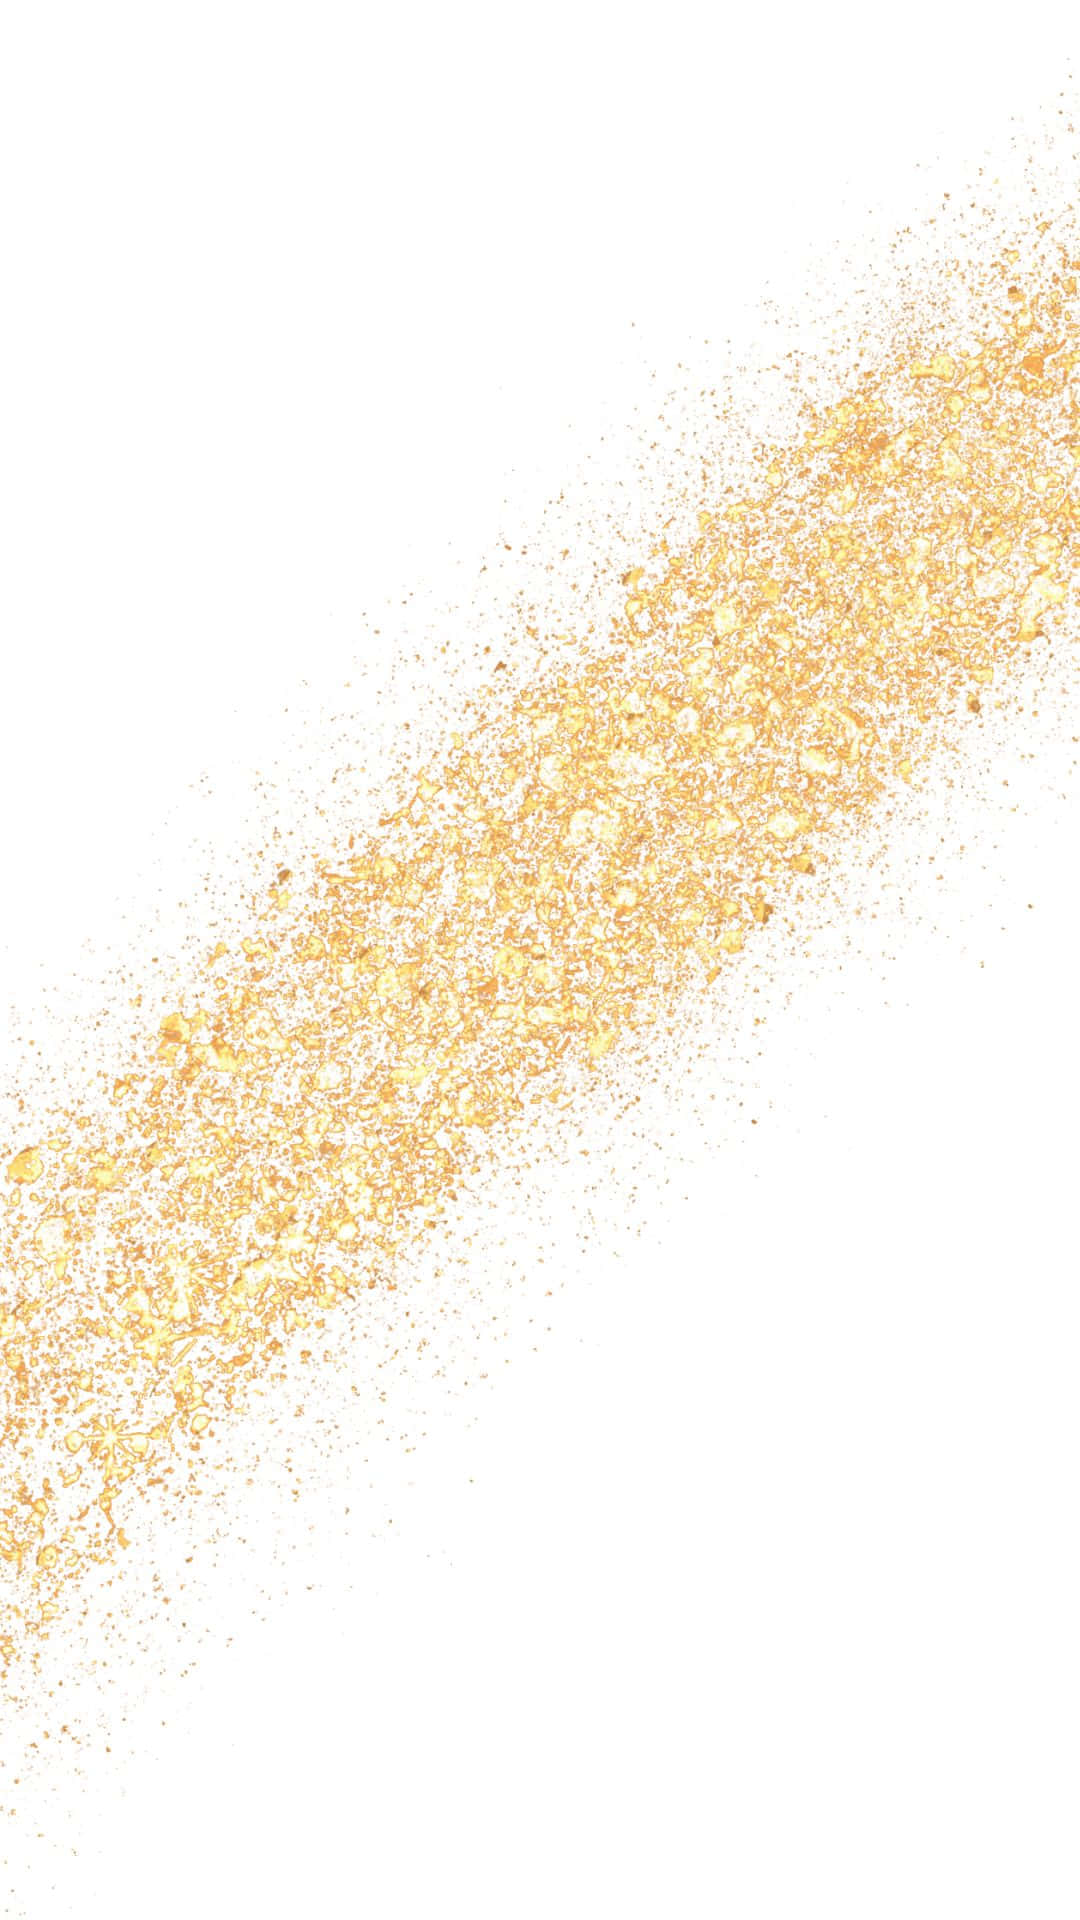 Gold Glitter Splatter On A White Background Background